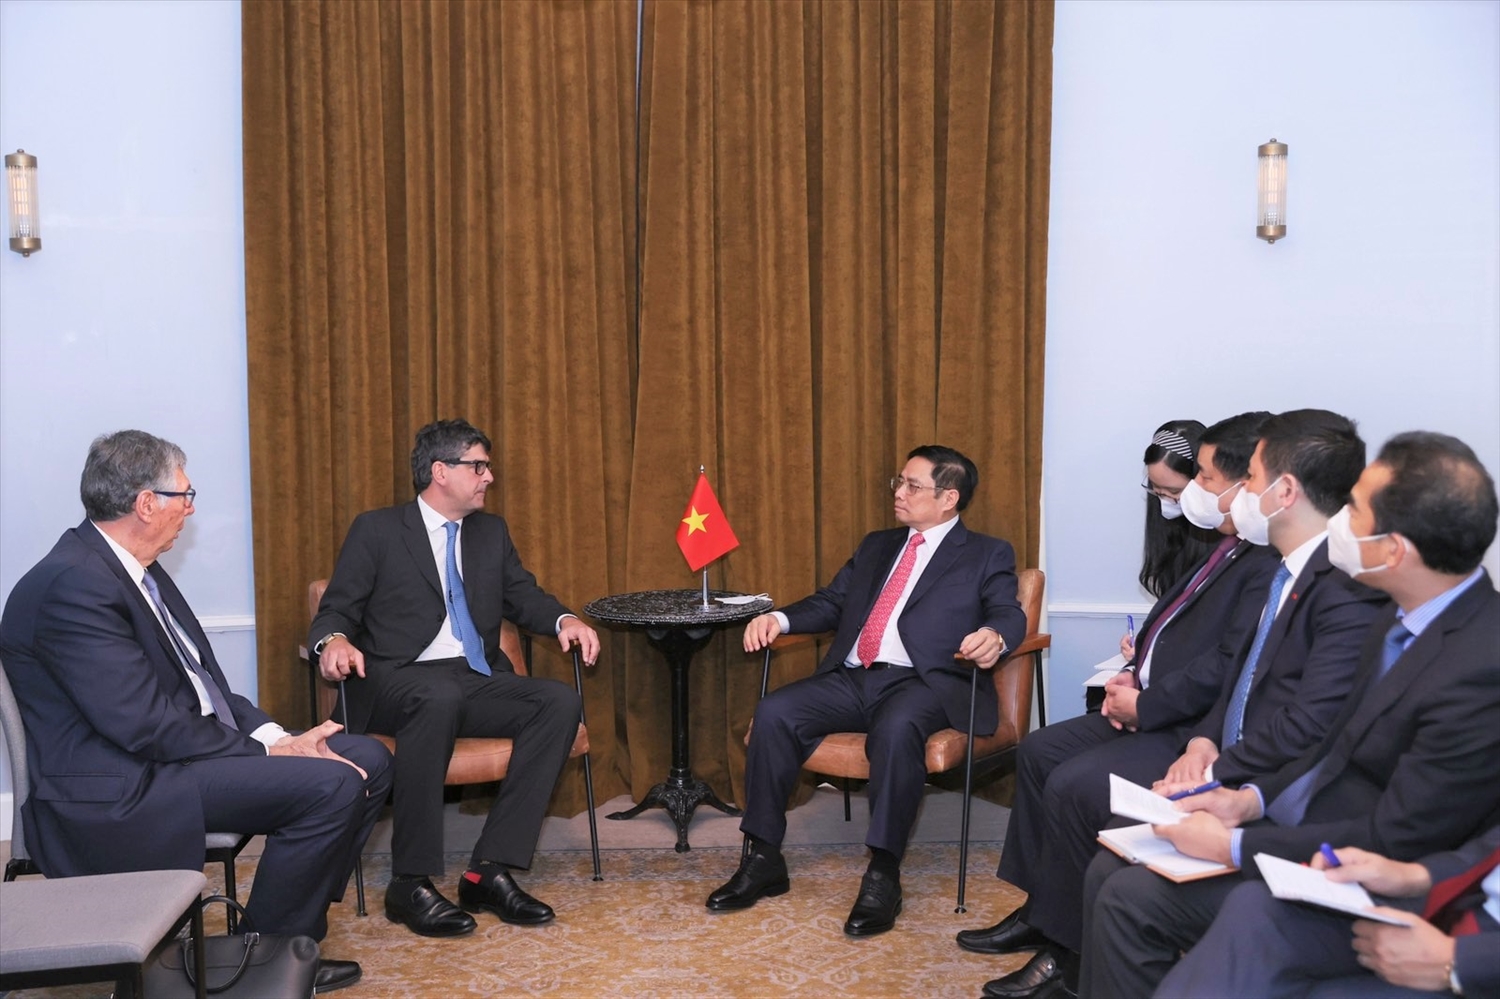 Thủ tướng bày tỏ ủng hộ kế hoạch mở rộng đầu tư kinh doanh của Tập đoàn Jardines tại Việt Nam, đề nghị Tập đoàn tiếp tục đồng hành và chia sẻ kinh nghiệm với các doanh nghiệp Việt Nam.